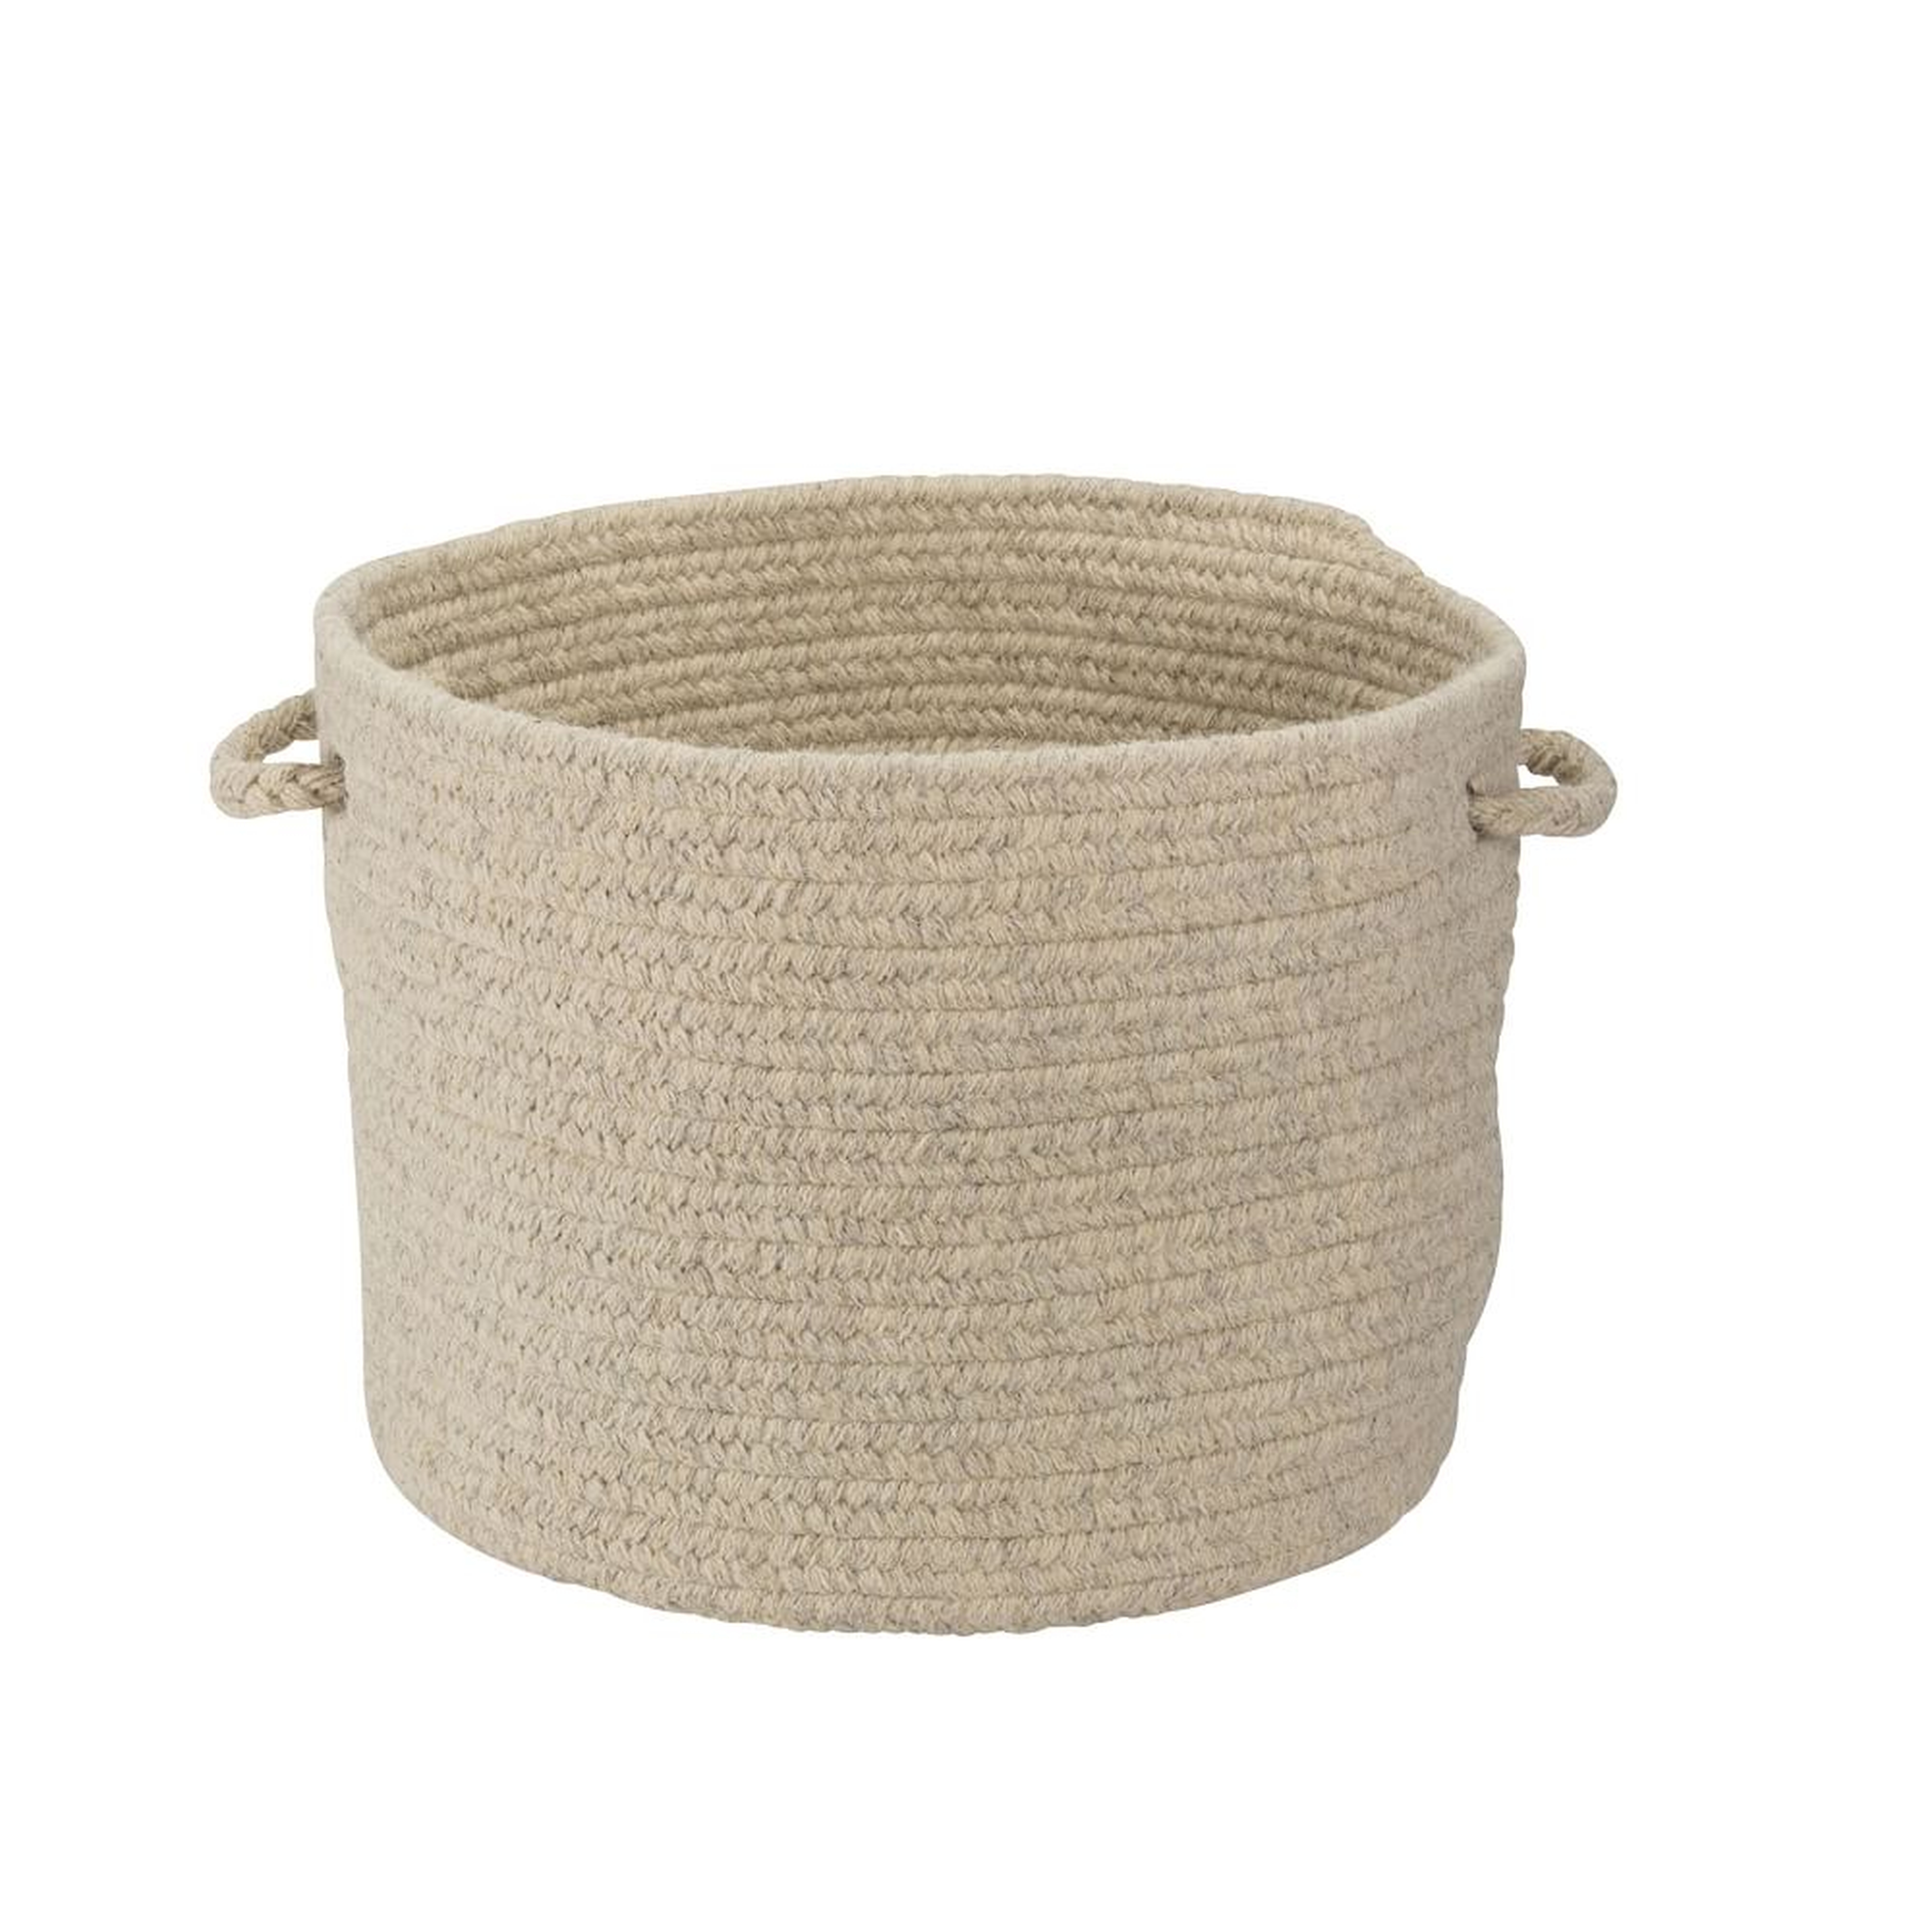 Natural Wool Basket, Light Gray, Medium, 16"D x 12"H - West Elm